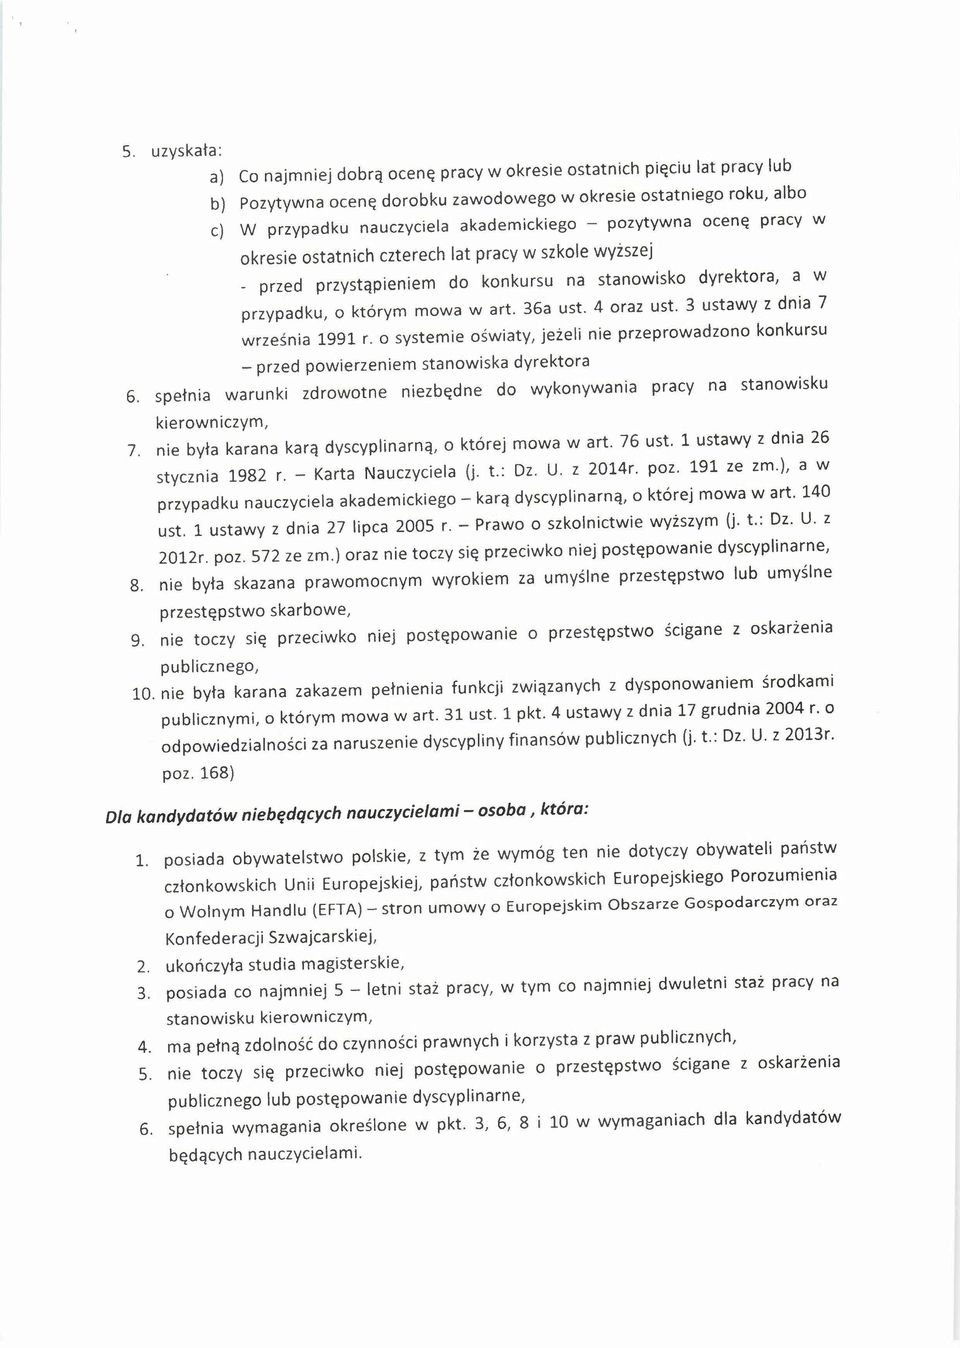 3 ustawy z dnia 7 września 1991 r. o systemie oświaty, jeżeli nie przeprowadzono konkursu - przed powierzeniem stanowiska dyrektora 6.